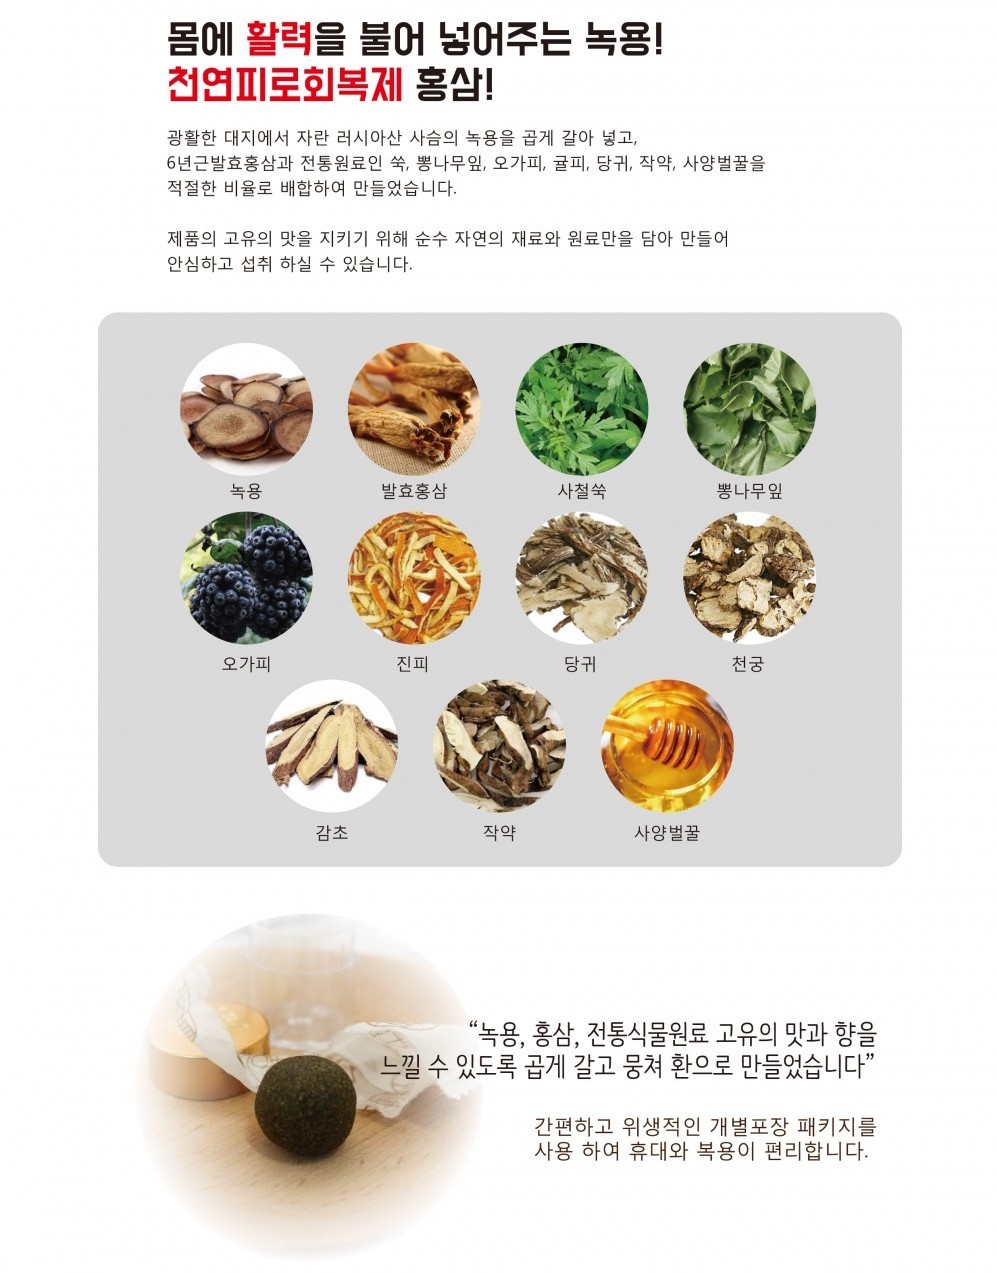 韓國食品-[KHS] Fermented Red Ginseng Mixed Deer Antlers Pills 4g*30